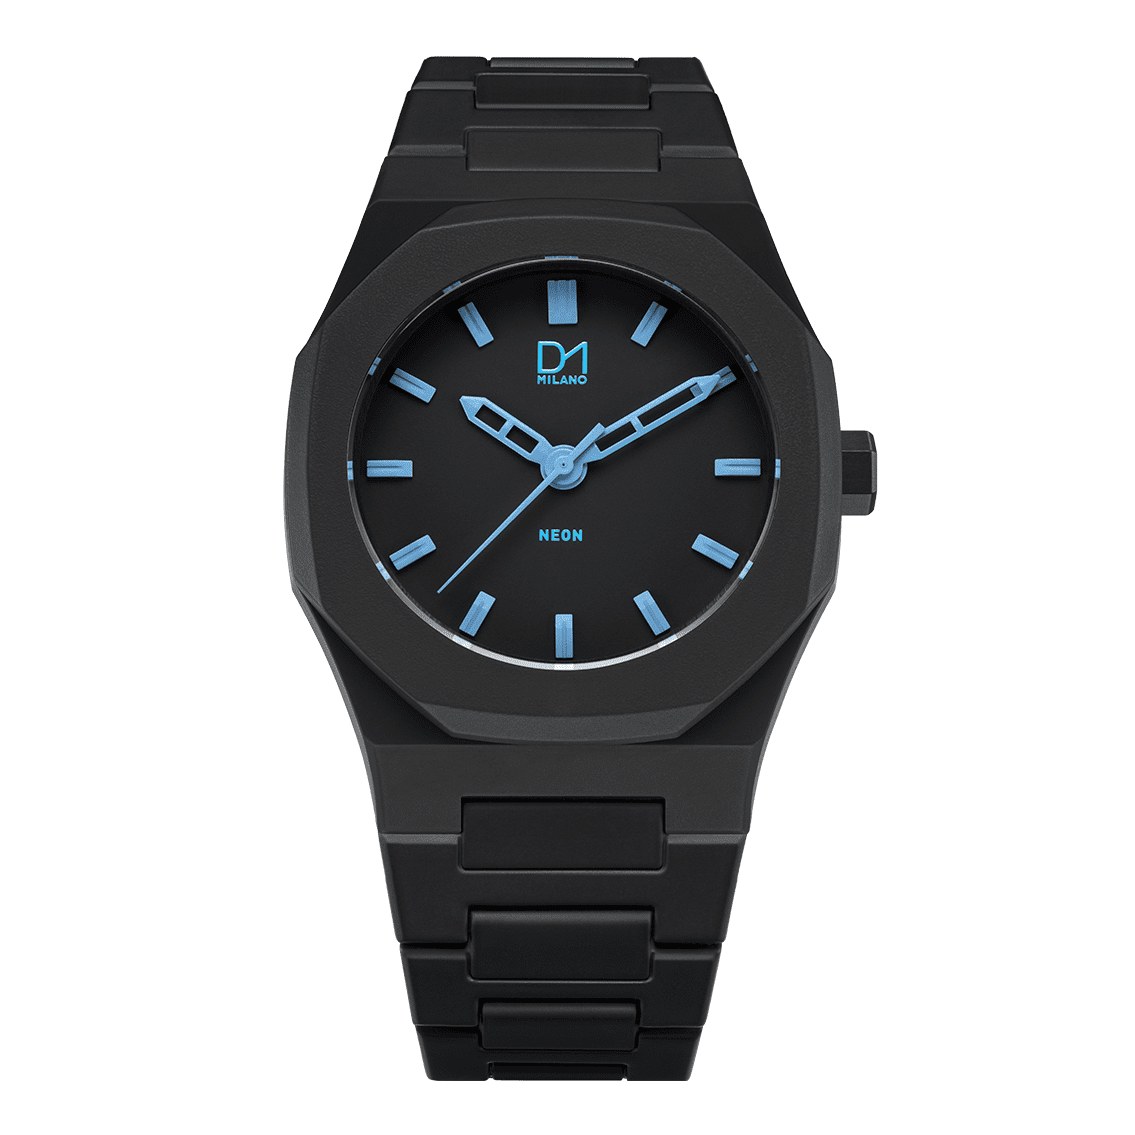 Unisex Polycarbon Watch D1-A-NE01 D1 Milano